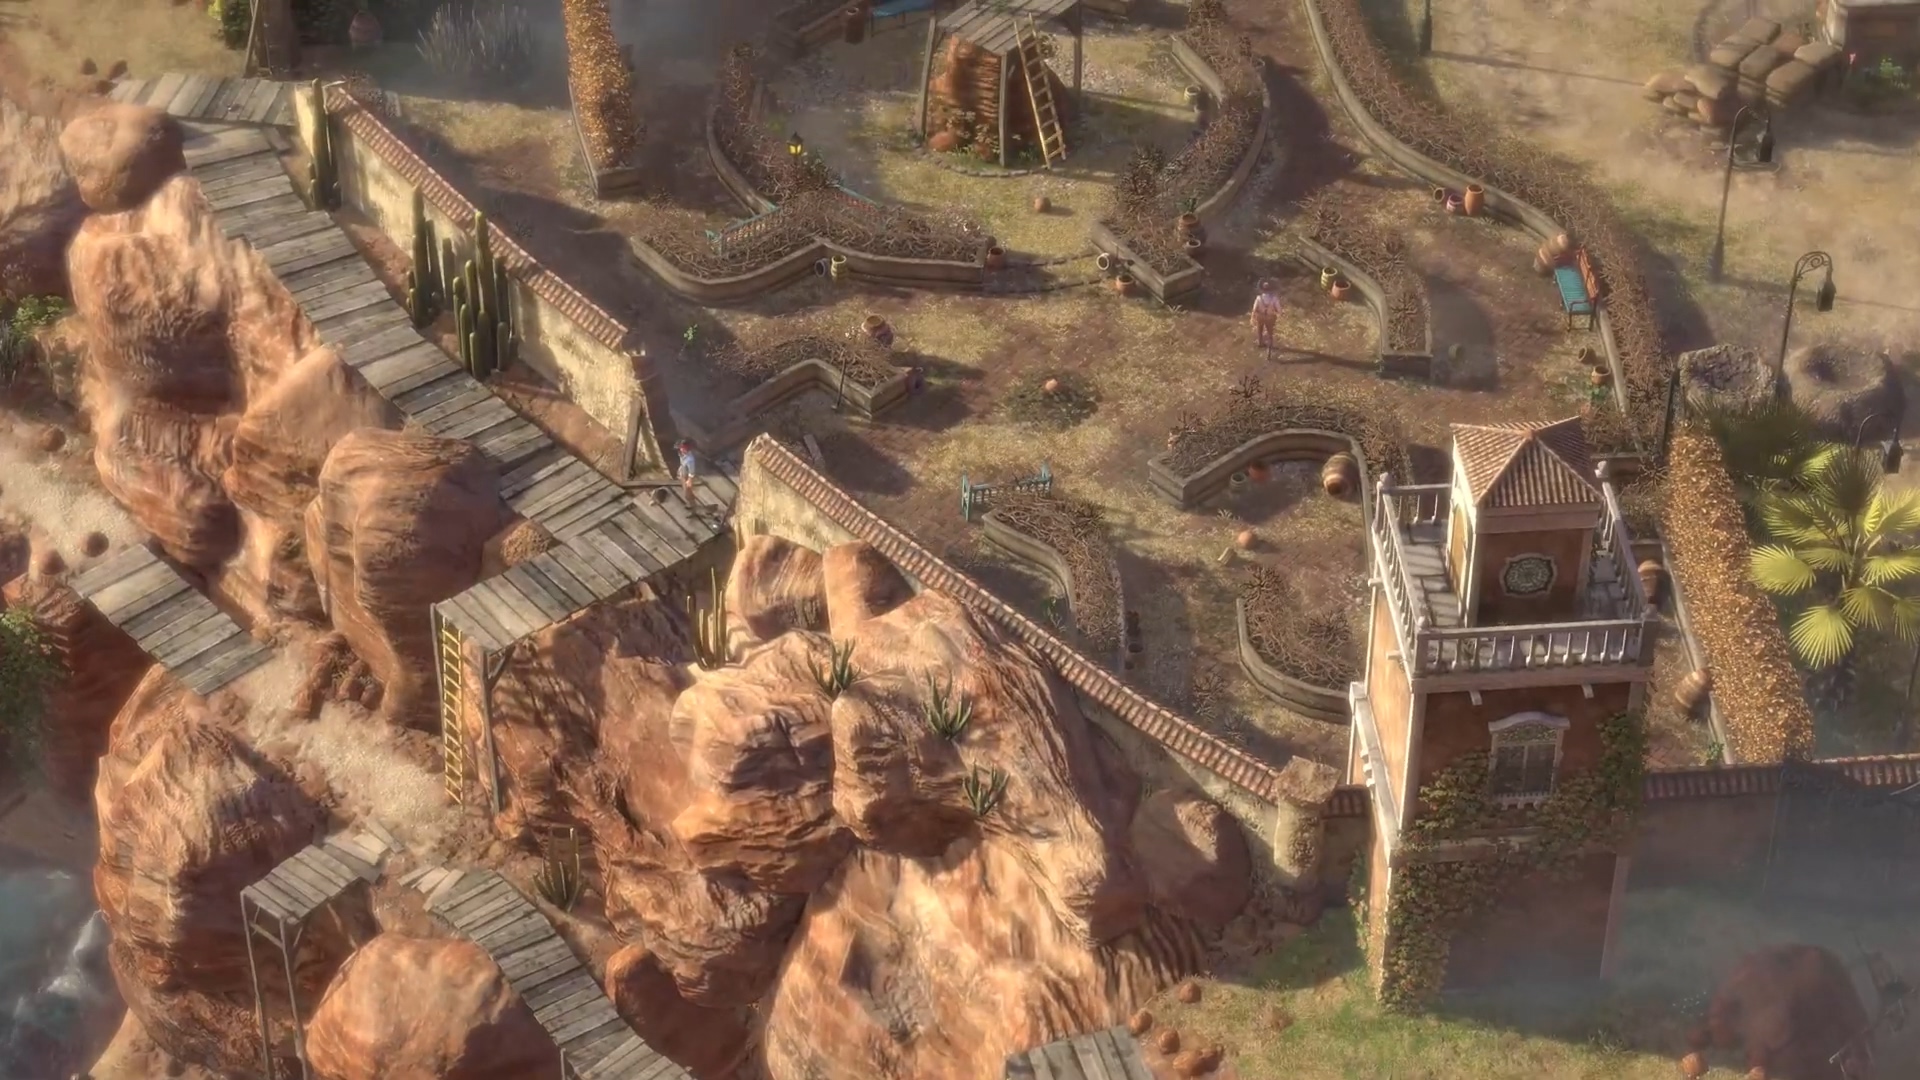 《赏金奇兵3》首款DLC公布 9月2日正式上线